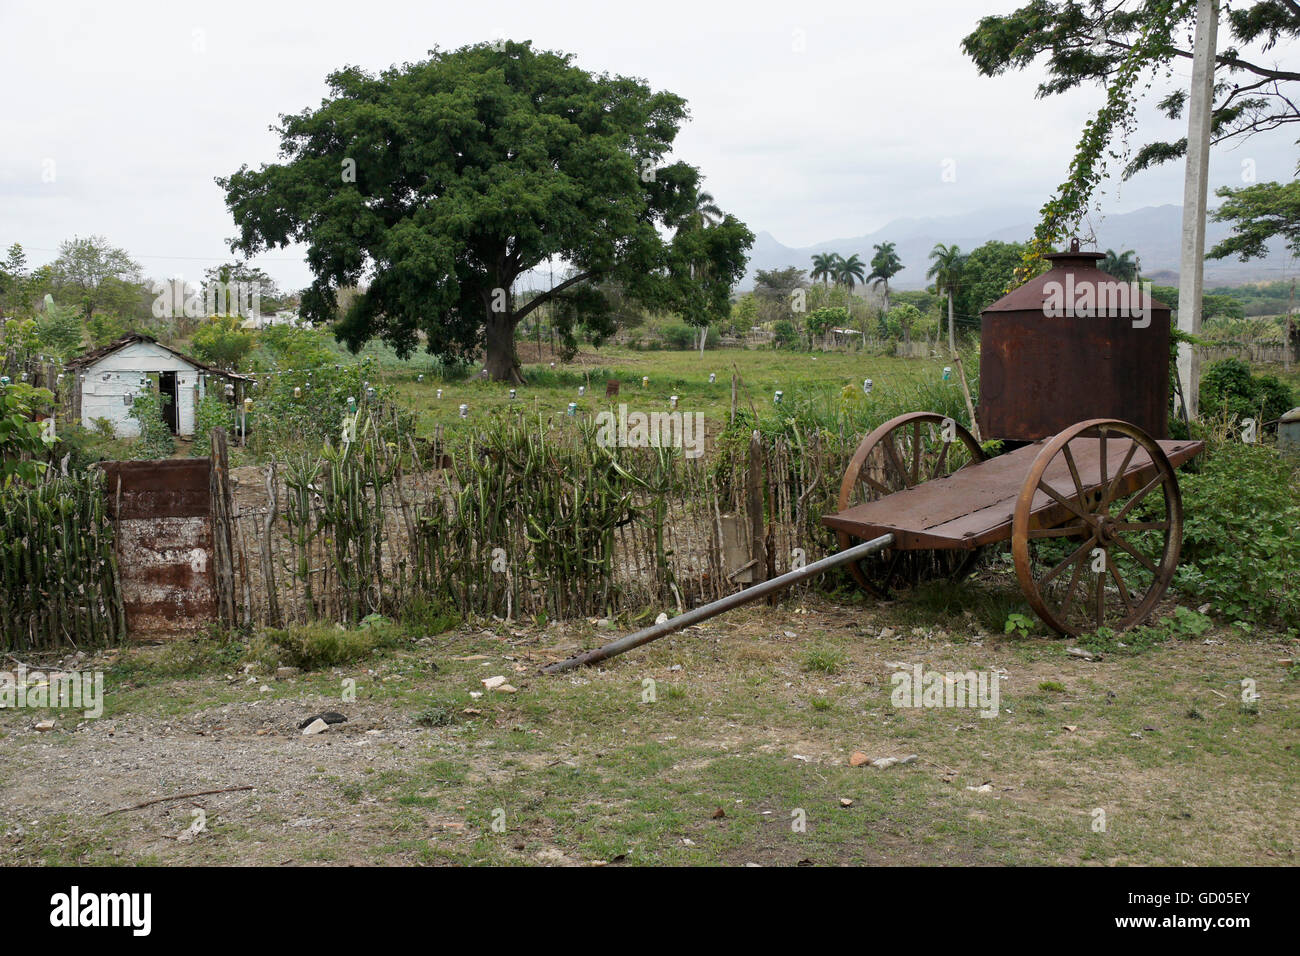 Kleiner Bauernhof in Valle de Los Ingenios (Tal der Zuckerfabriken), Trinidad, Kuba Stockfoto